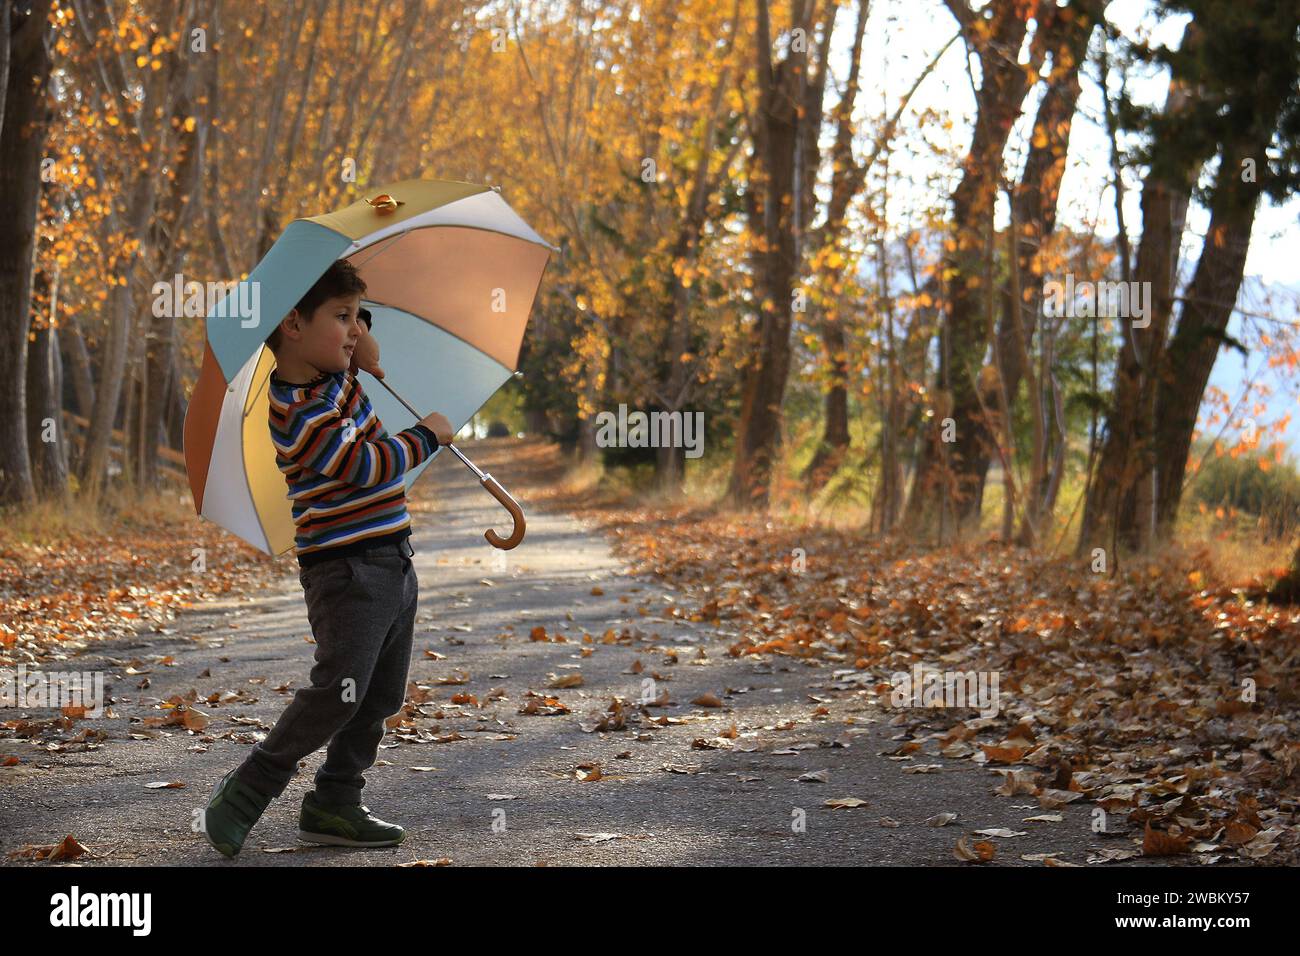 Ein Kind, das Spaß mit einem Regenschirm inmitten von Herbstblättern hat. Stockfoto